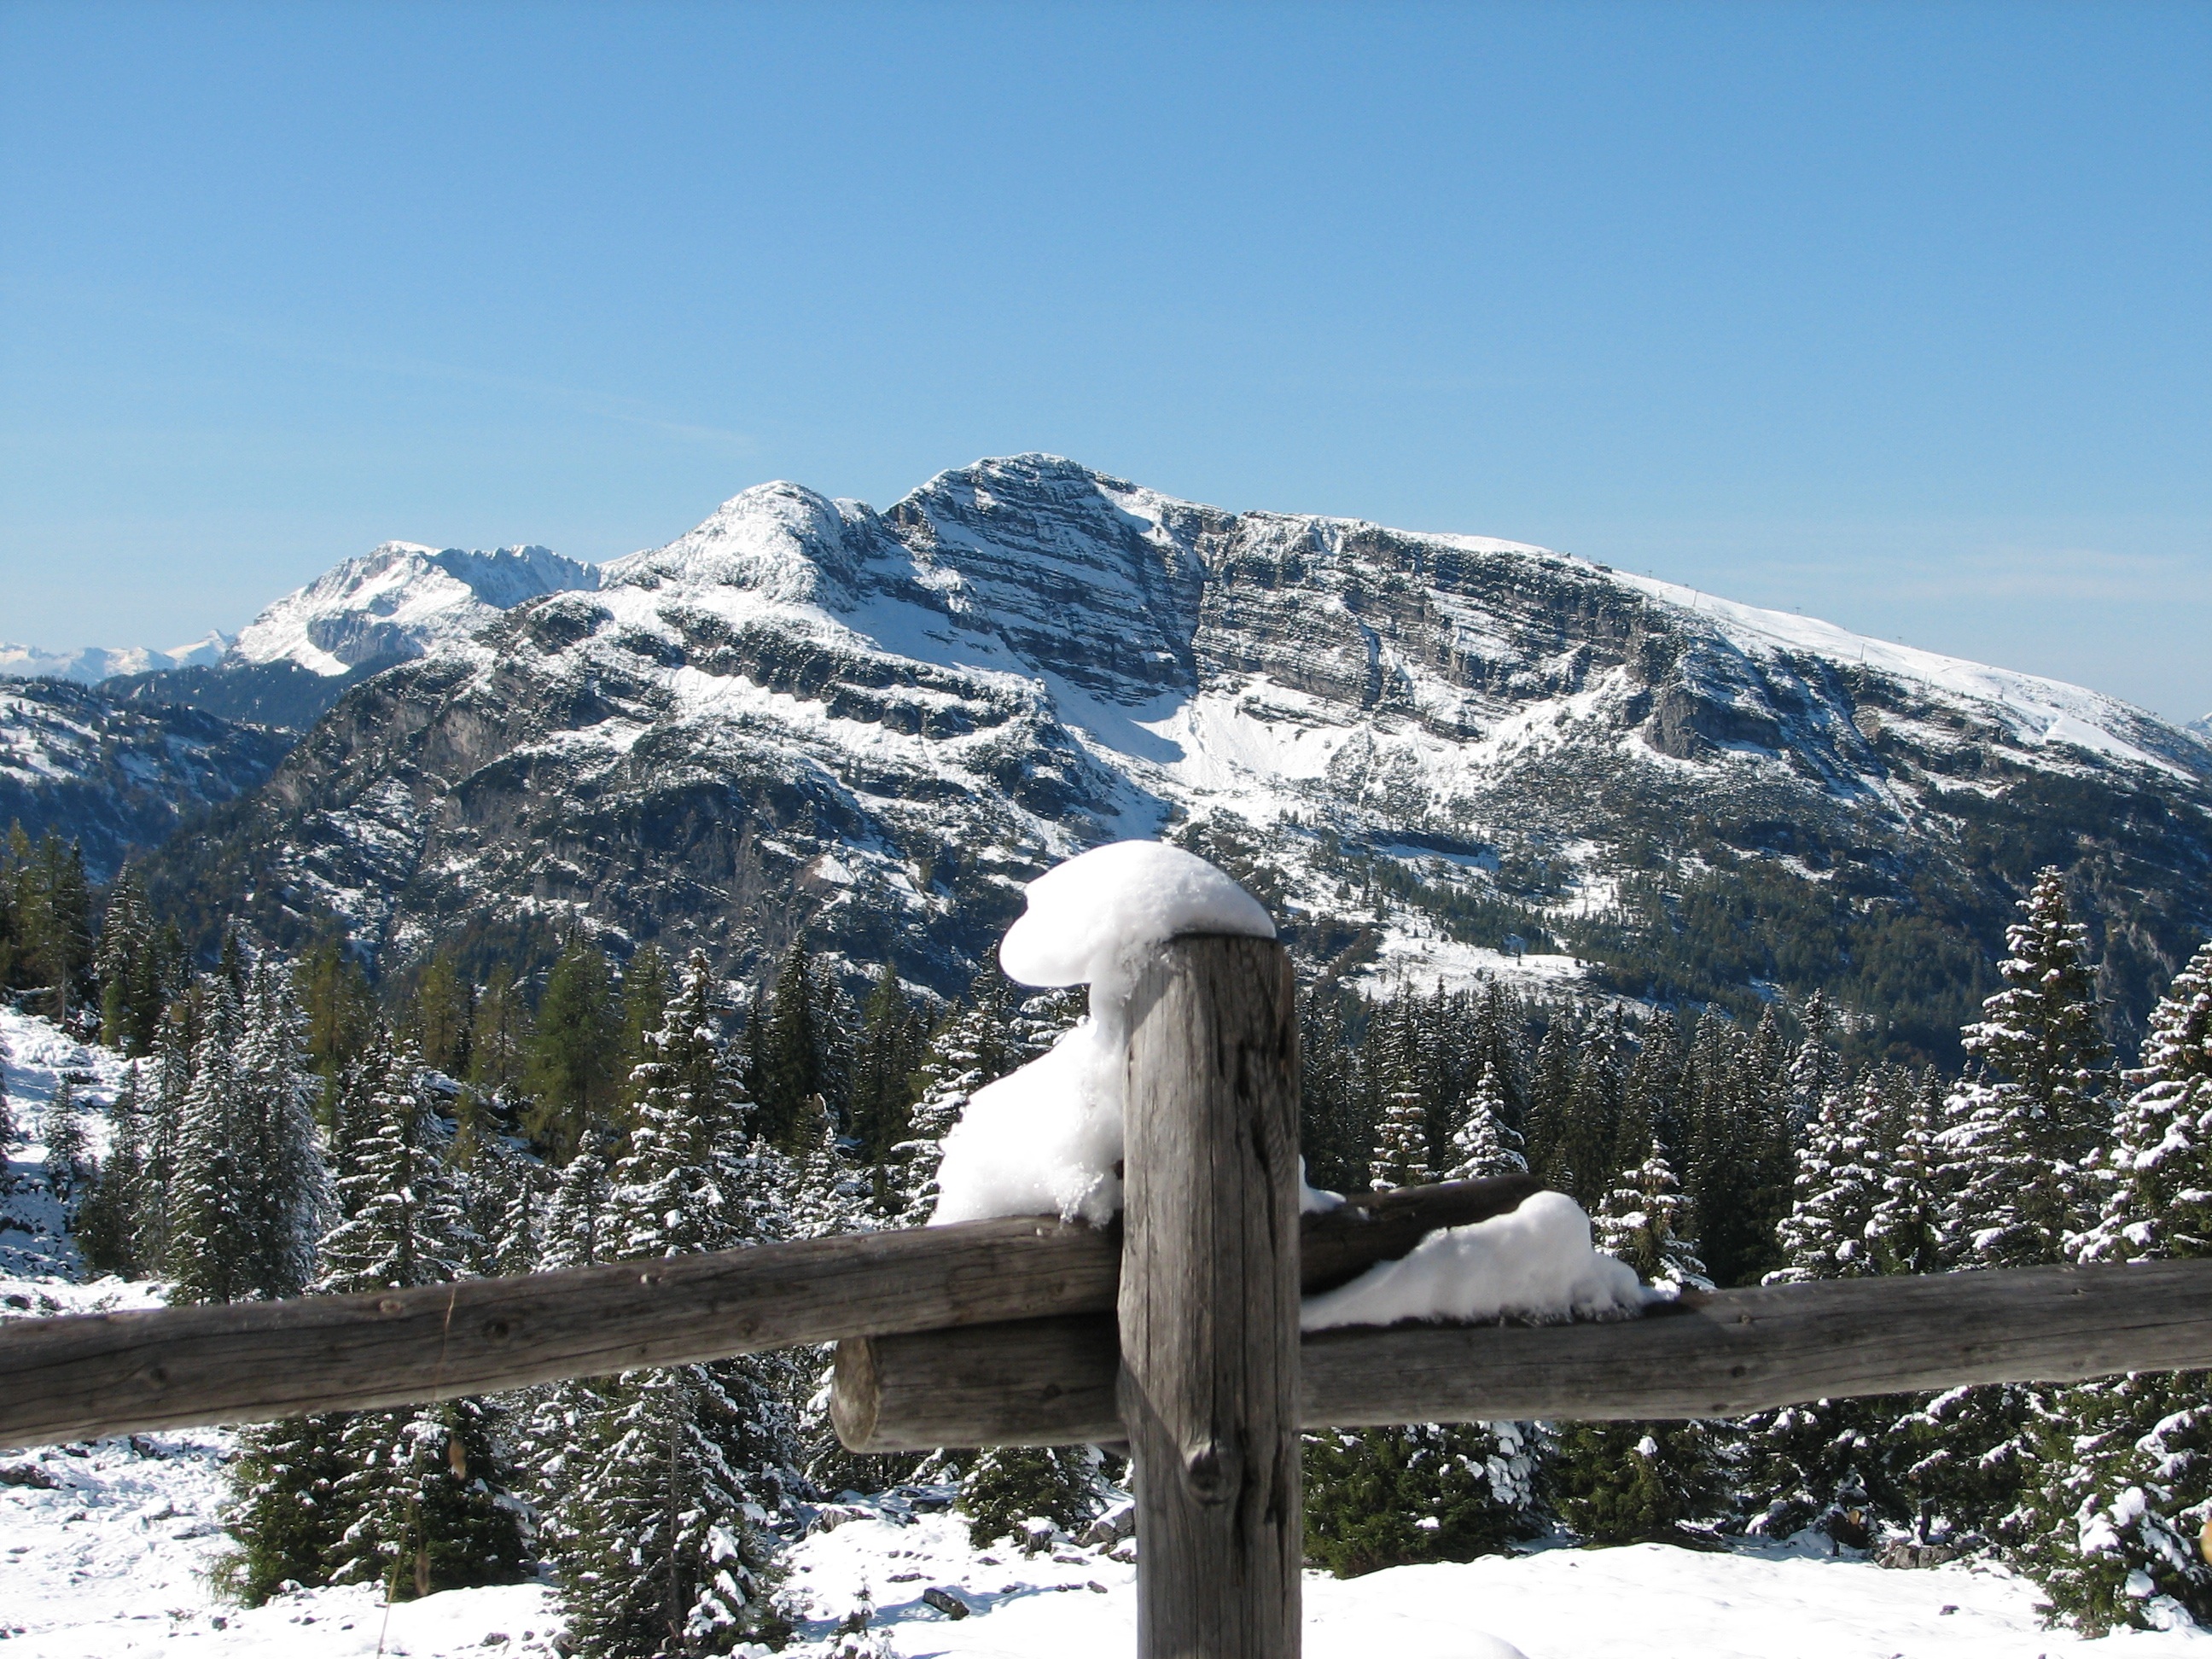 Snow alps, winter, mountains, nature Free Stock Photos